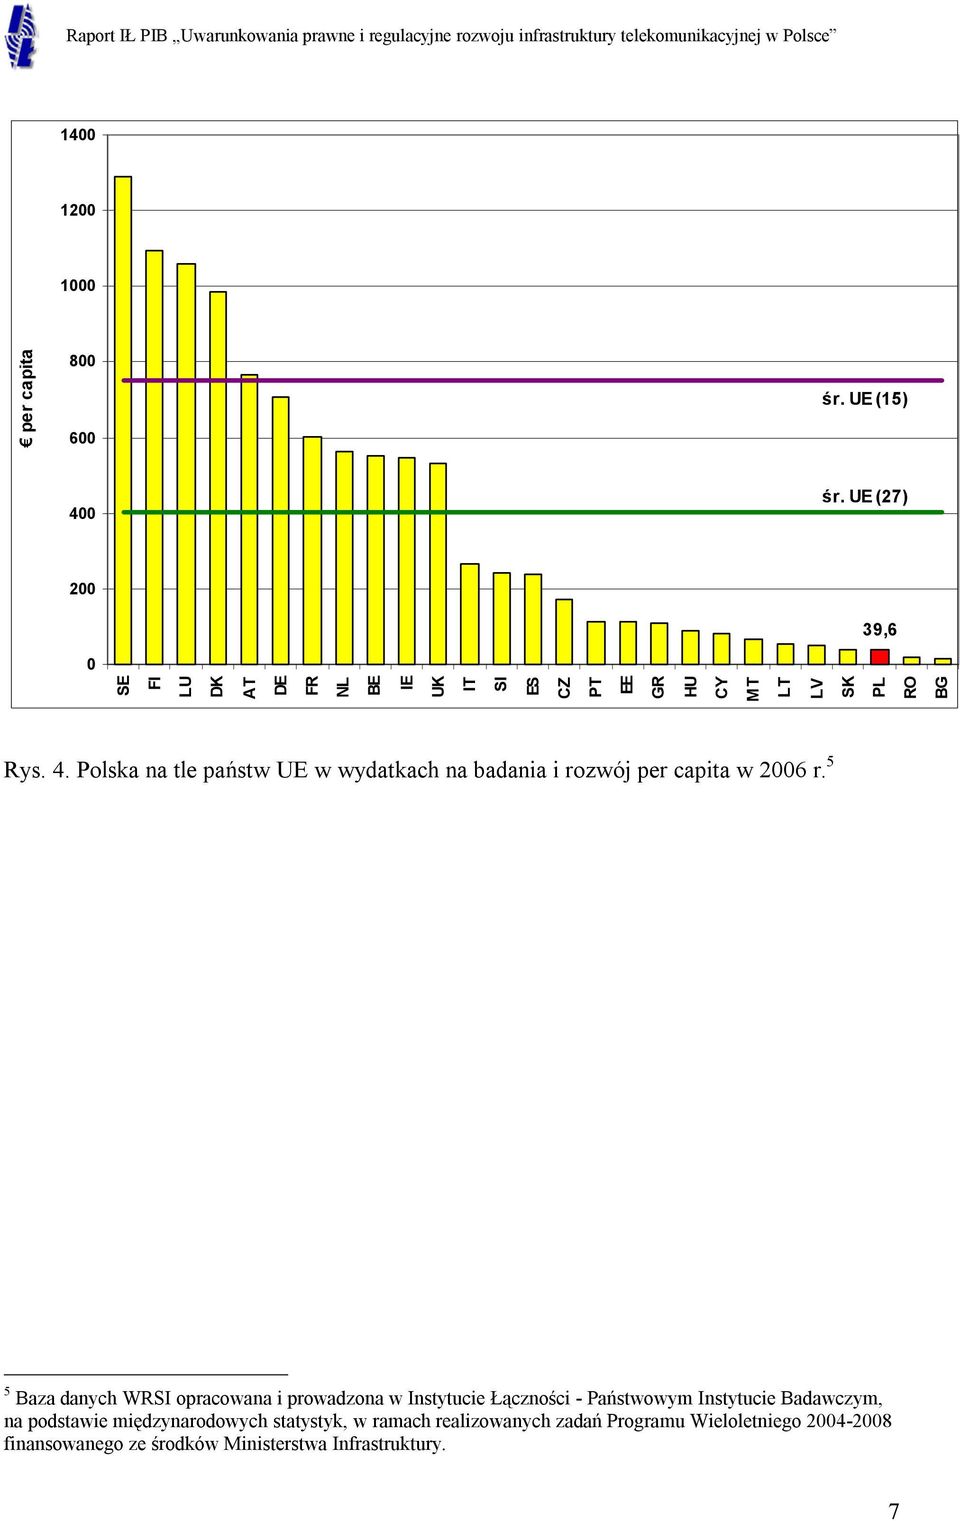 Polska na tle państw UE w wydatkach na badania i rozwój per capita w 2006 r.